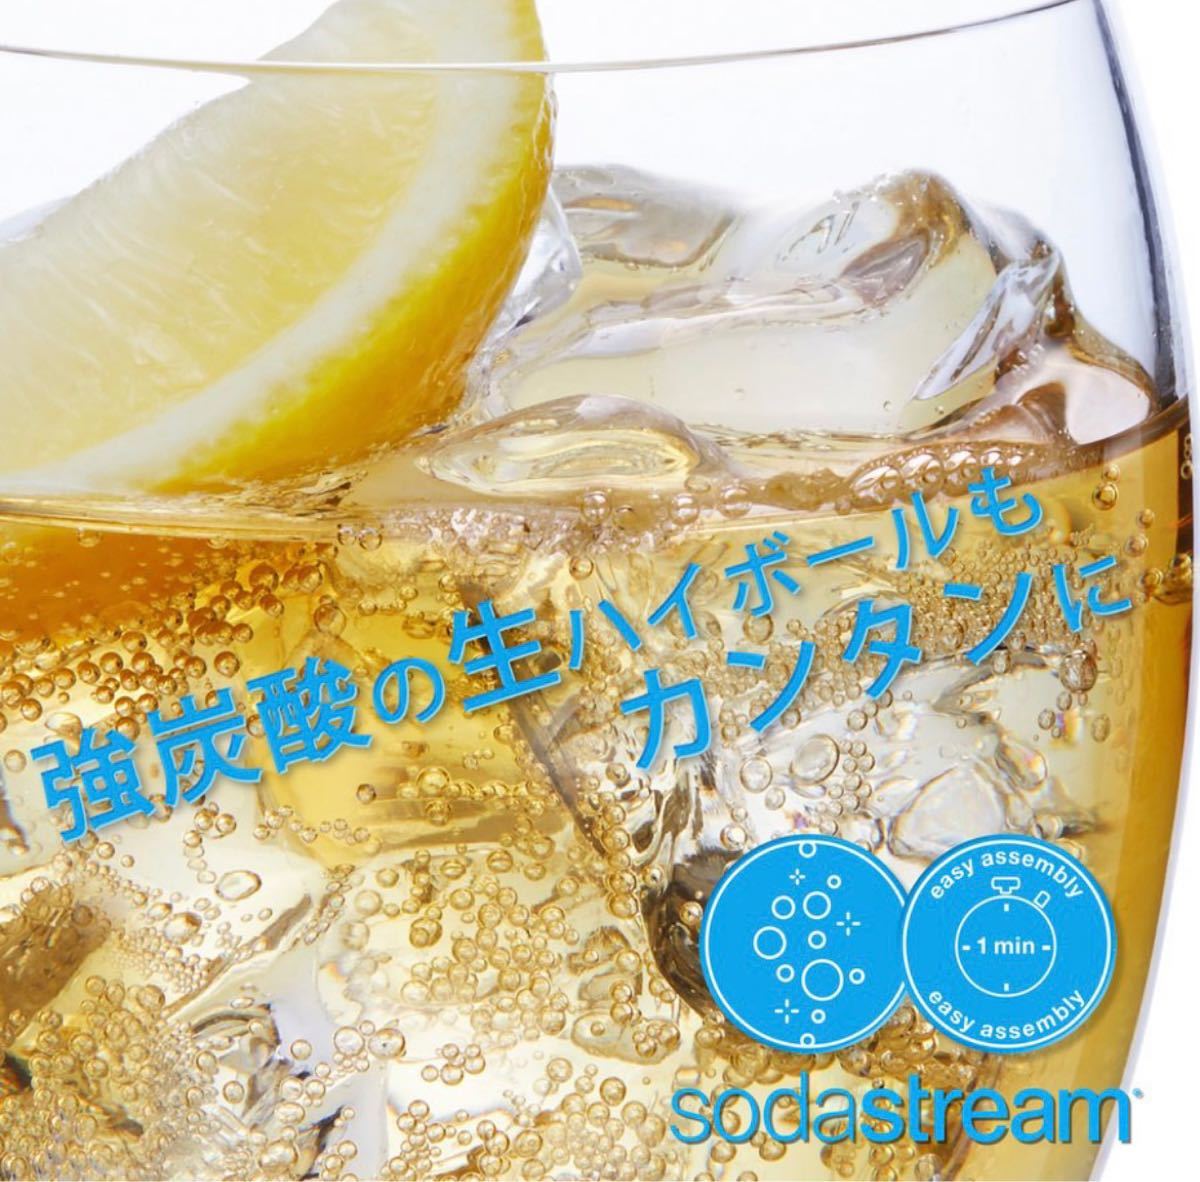 ソーダストリーム sodastream GENESIS スターターキット 炭酸水 炭酸メーカー